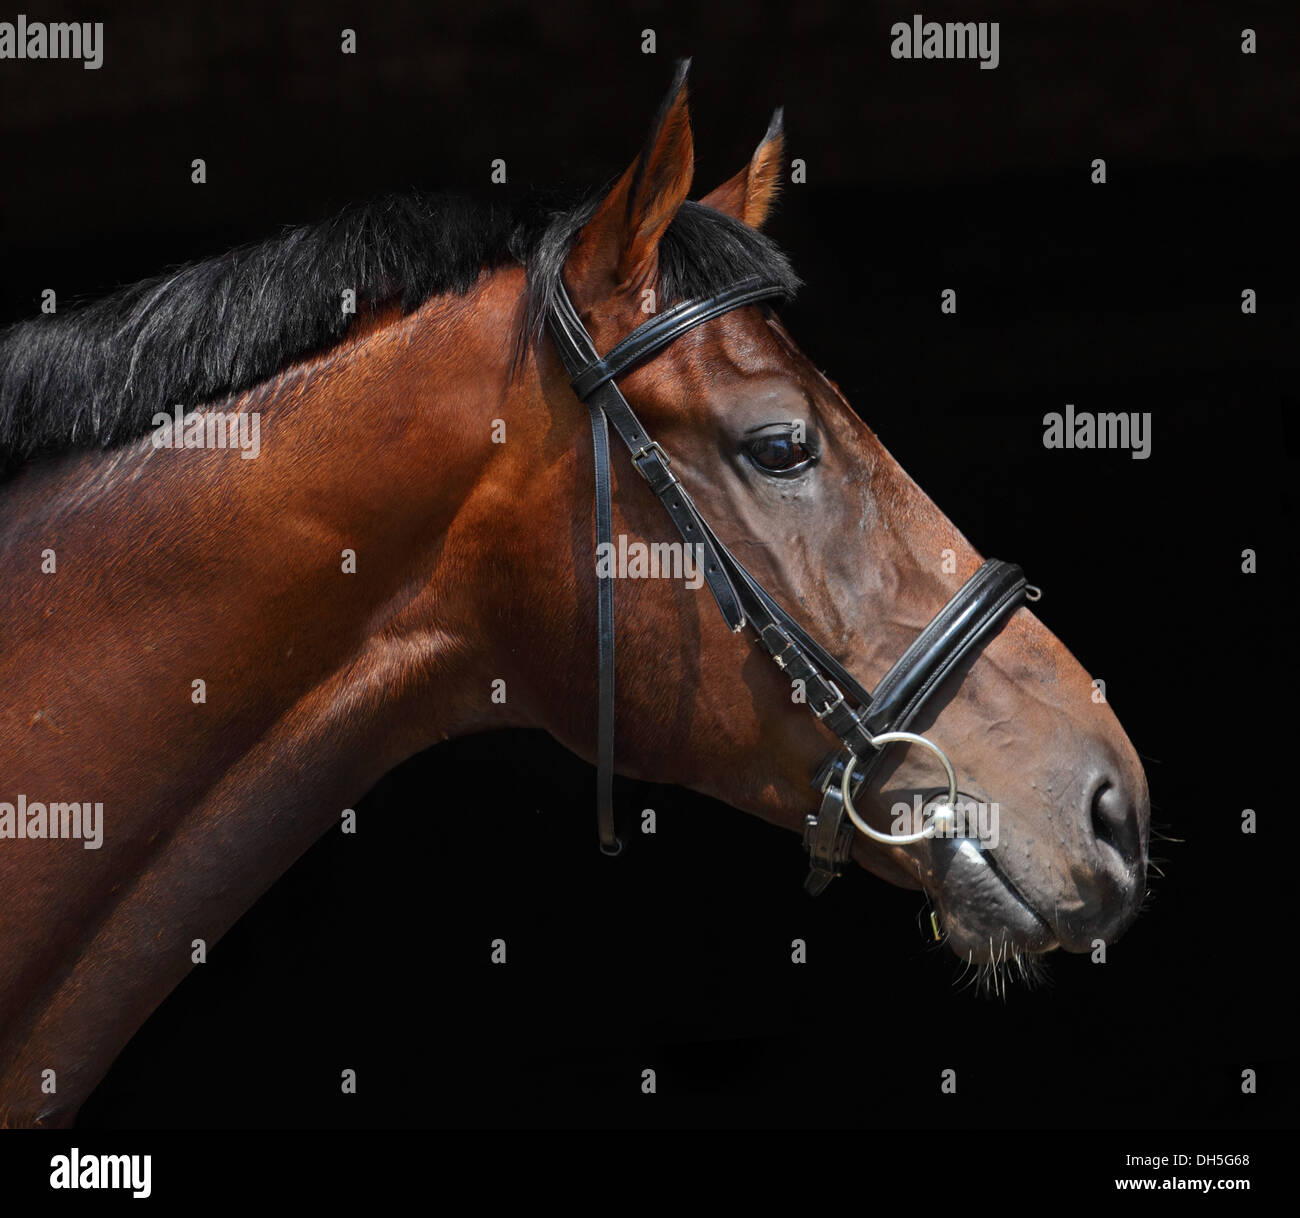 Oldenburg cavallo con briglia classica, chiave di basso ritratto su sfondo nero Foto Stock